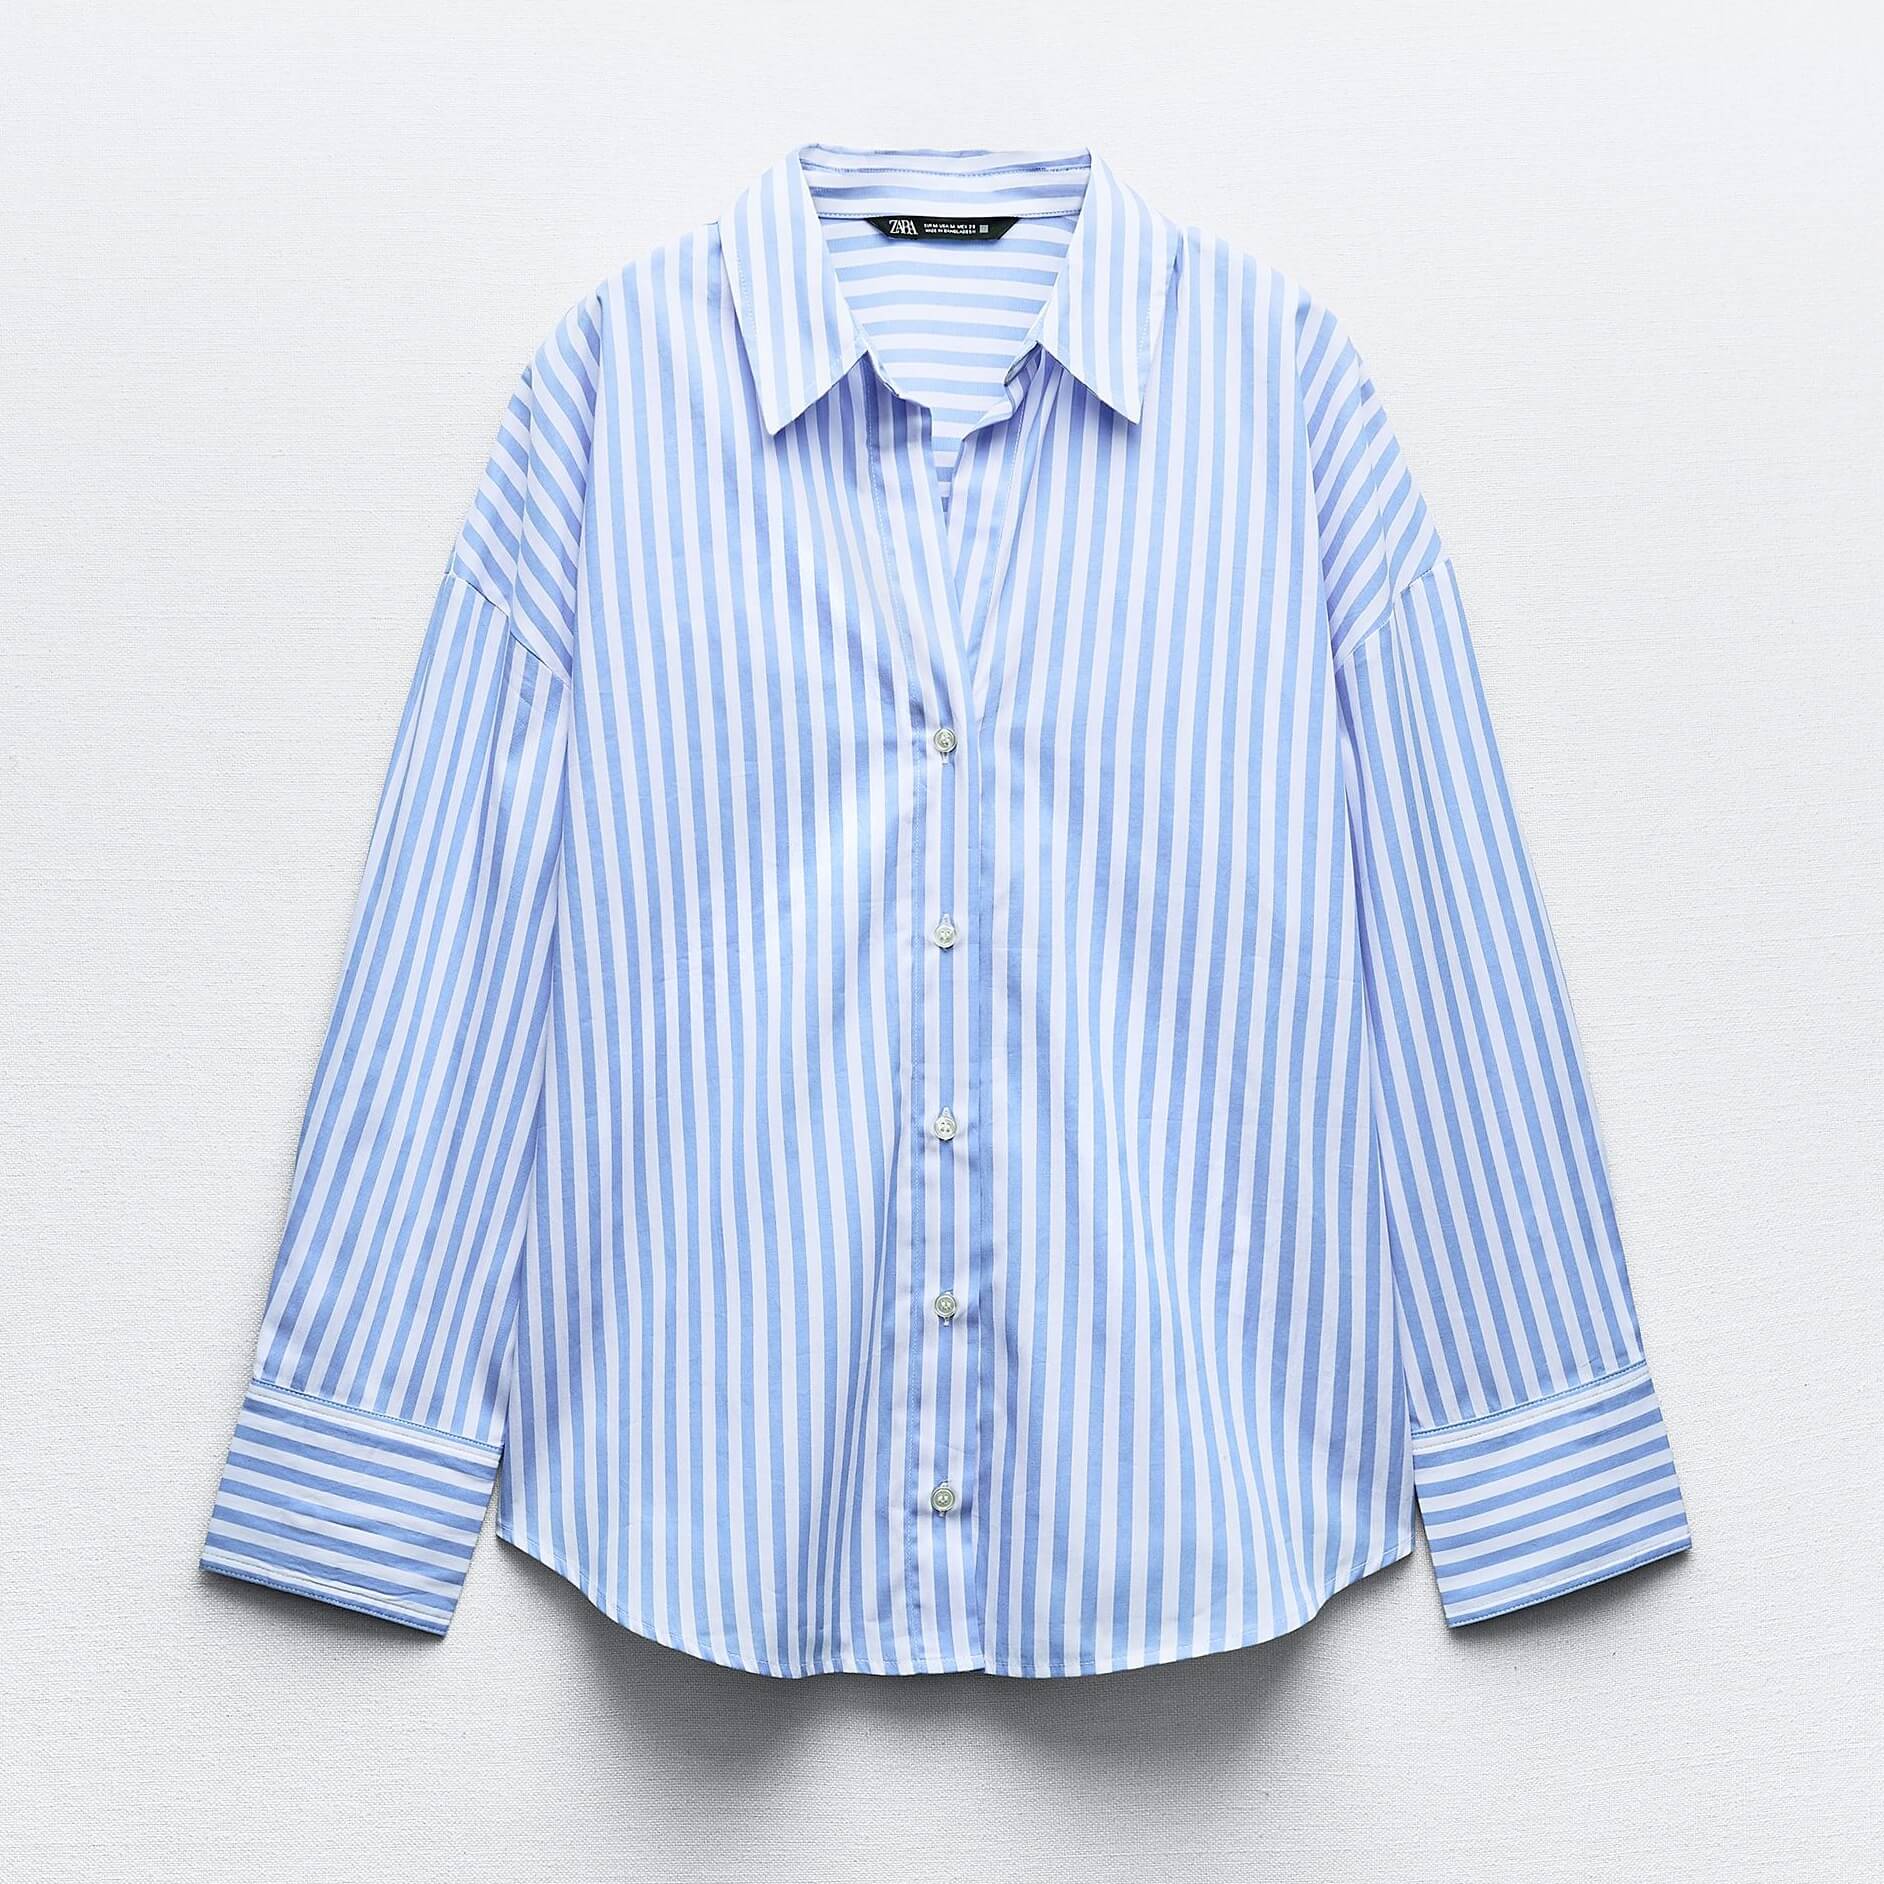 Рубашка Zara Striped Poplin, голубой/белый рубашка zara check poplin синий белый